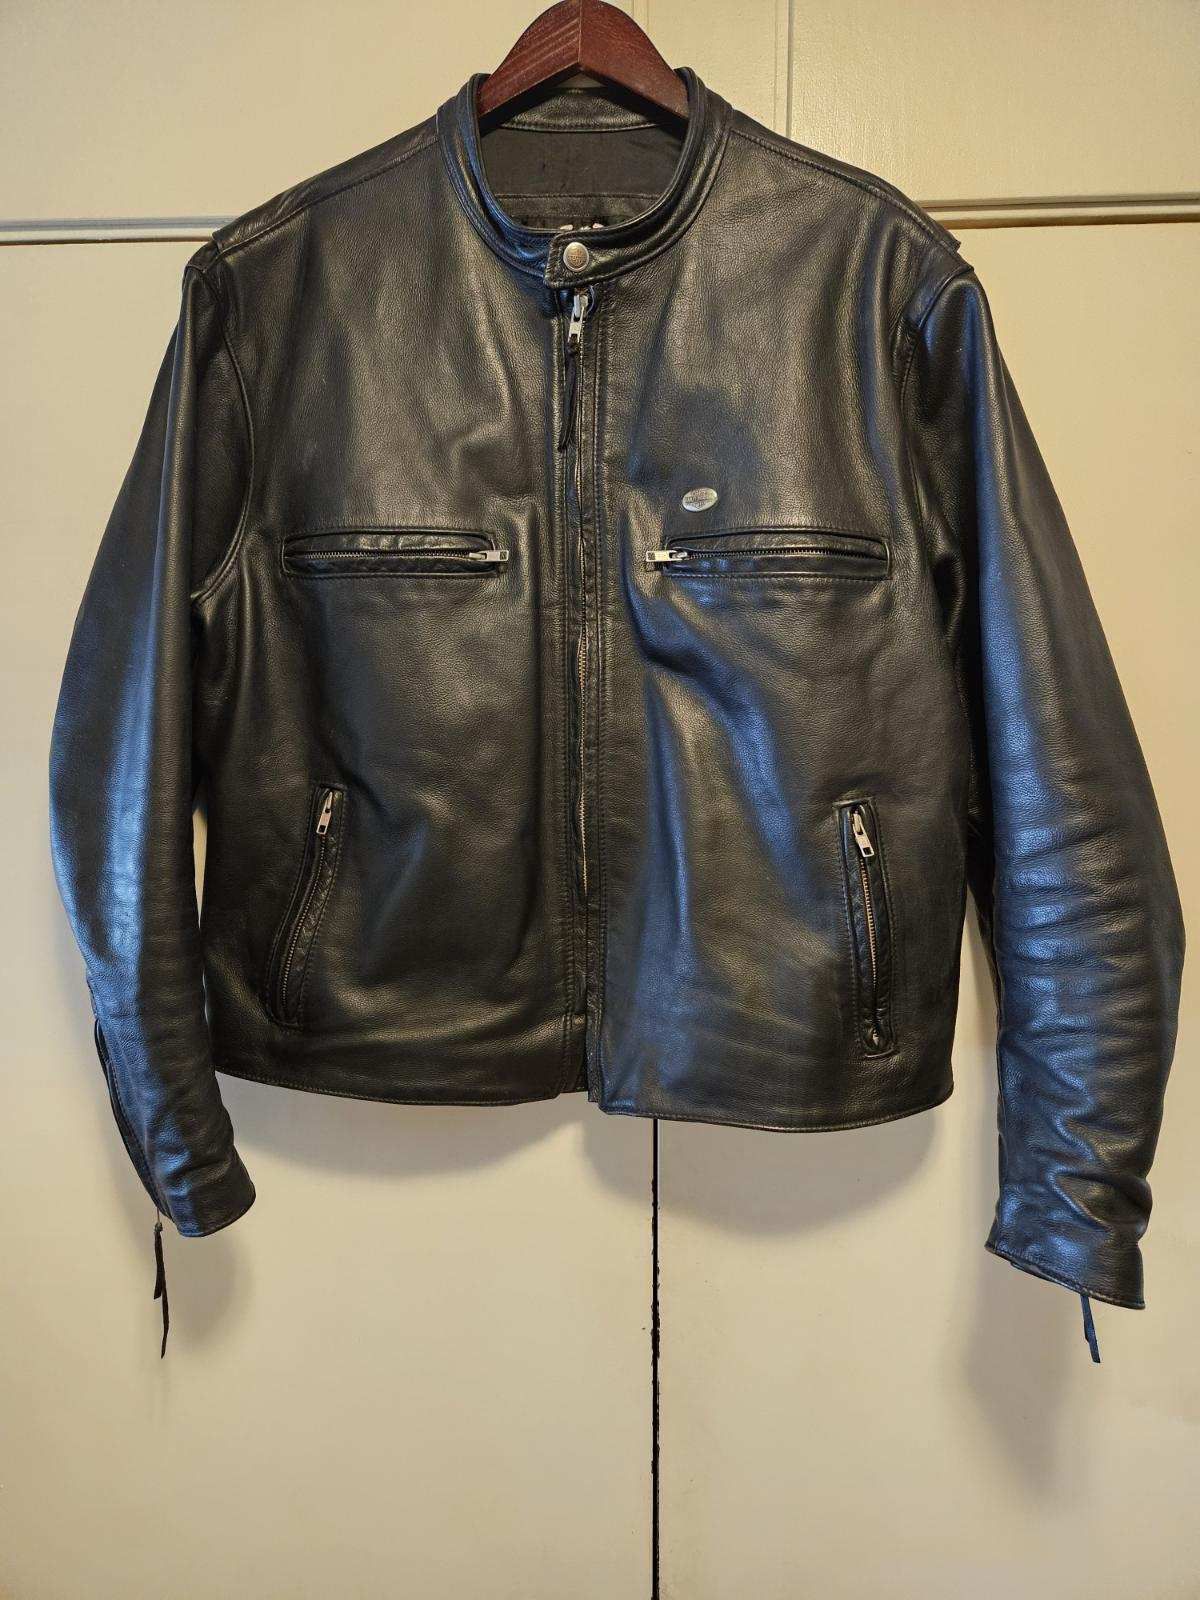 Mens XL Harley Davidson Leather Jacket